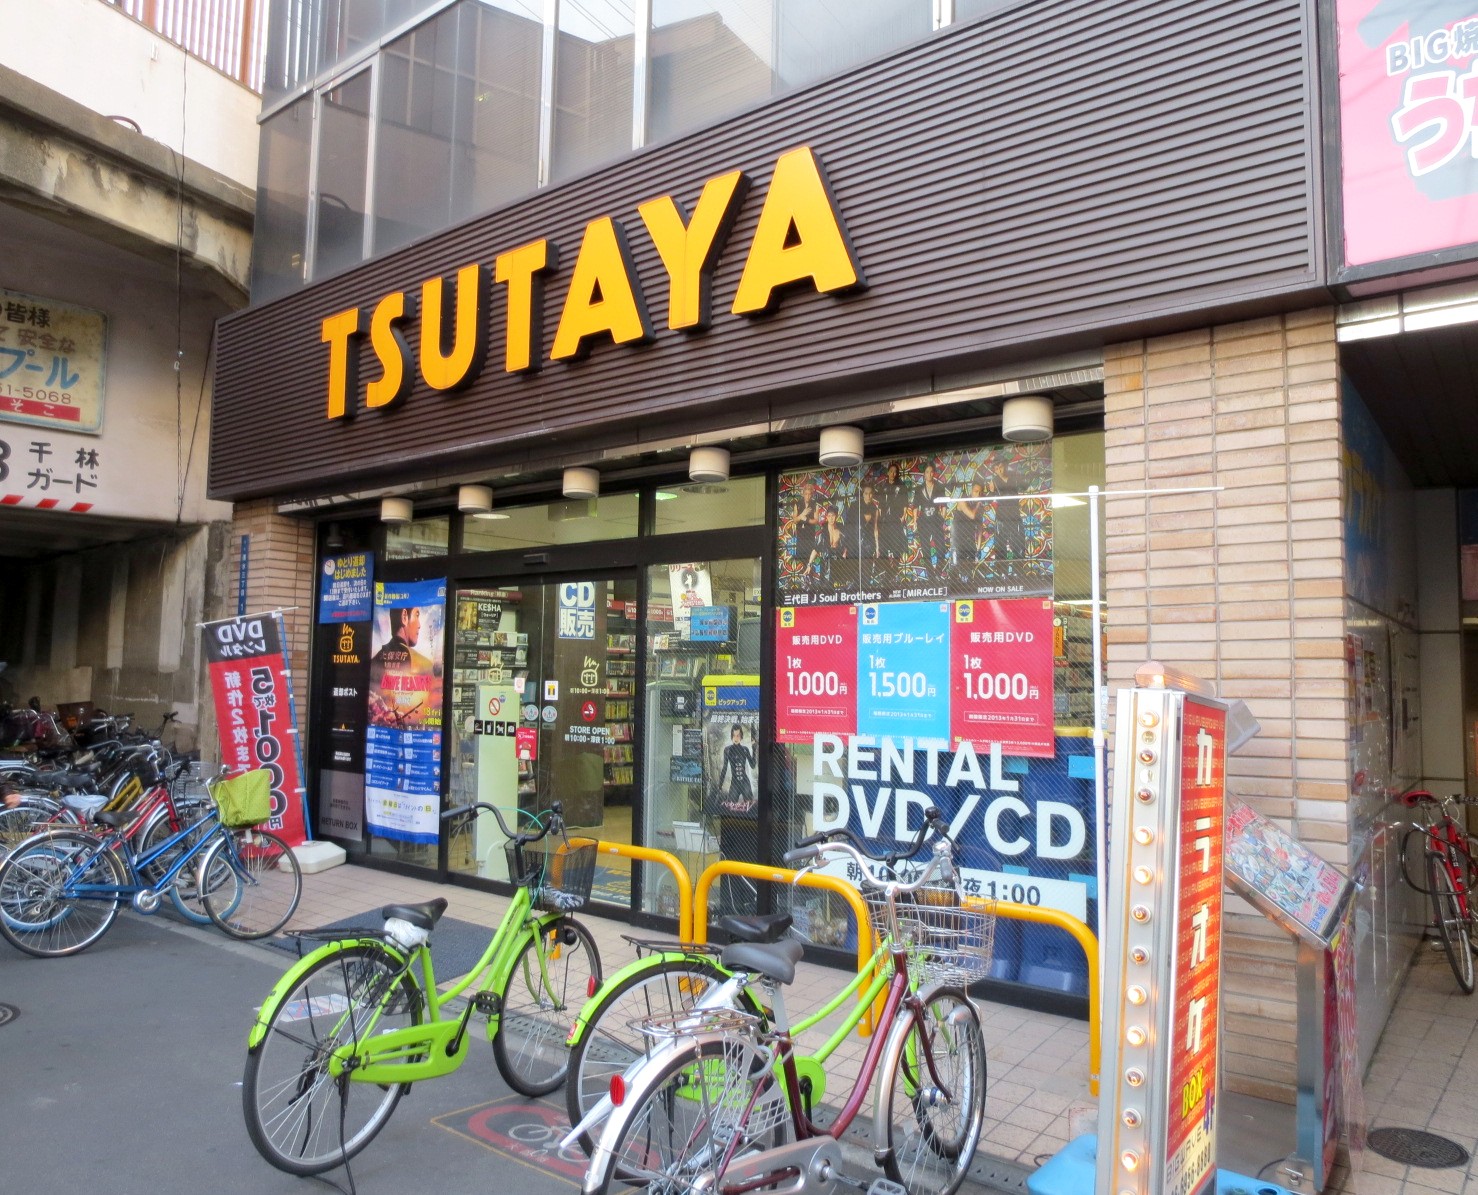 Rental video. TSUTAYA Sembayashi shop 655m up (video rental)